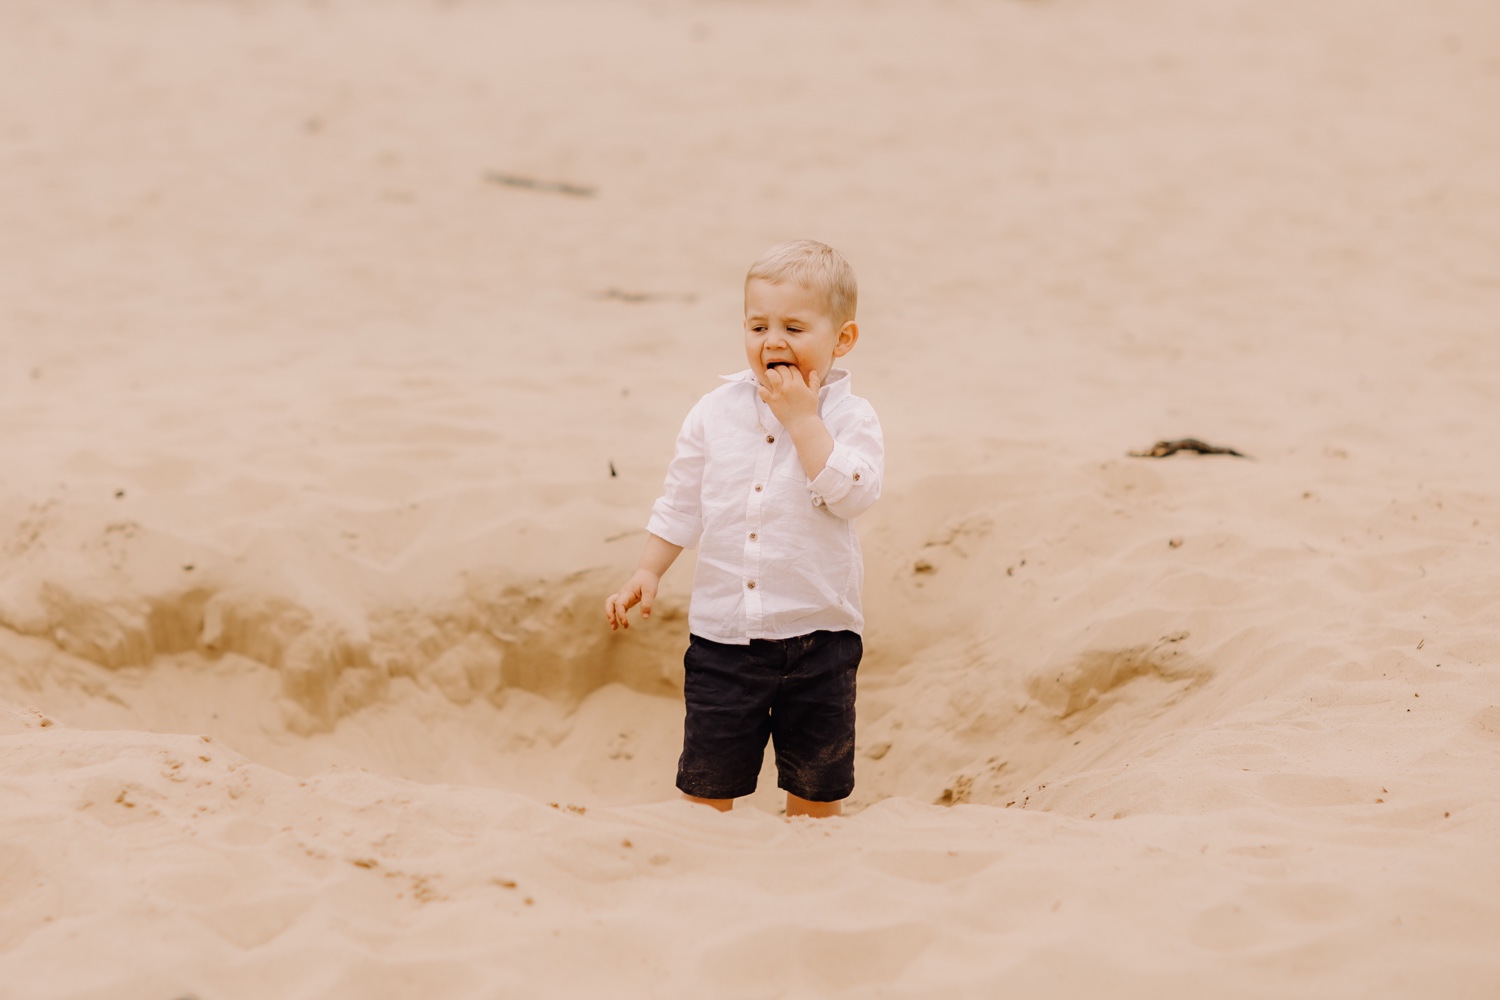 gezinsfotograaf Limburg - kleinzoon eet zand tijdens fotoshoot